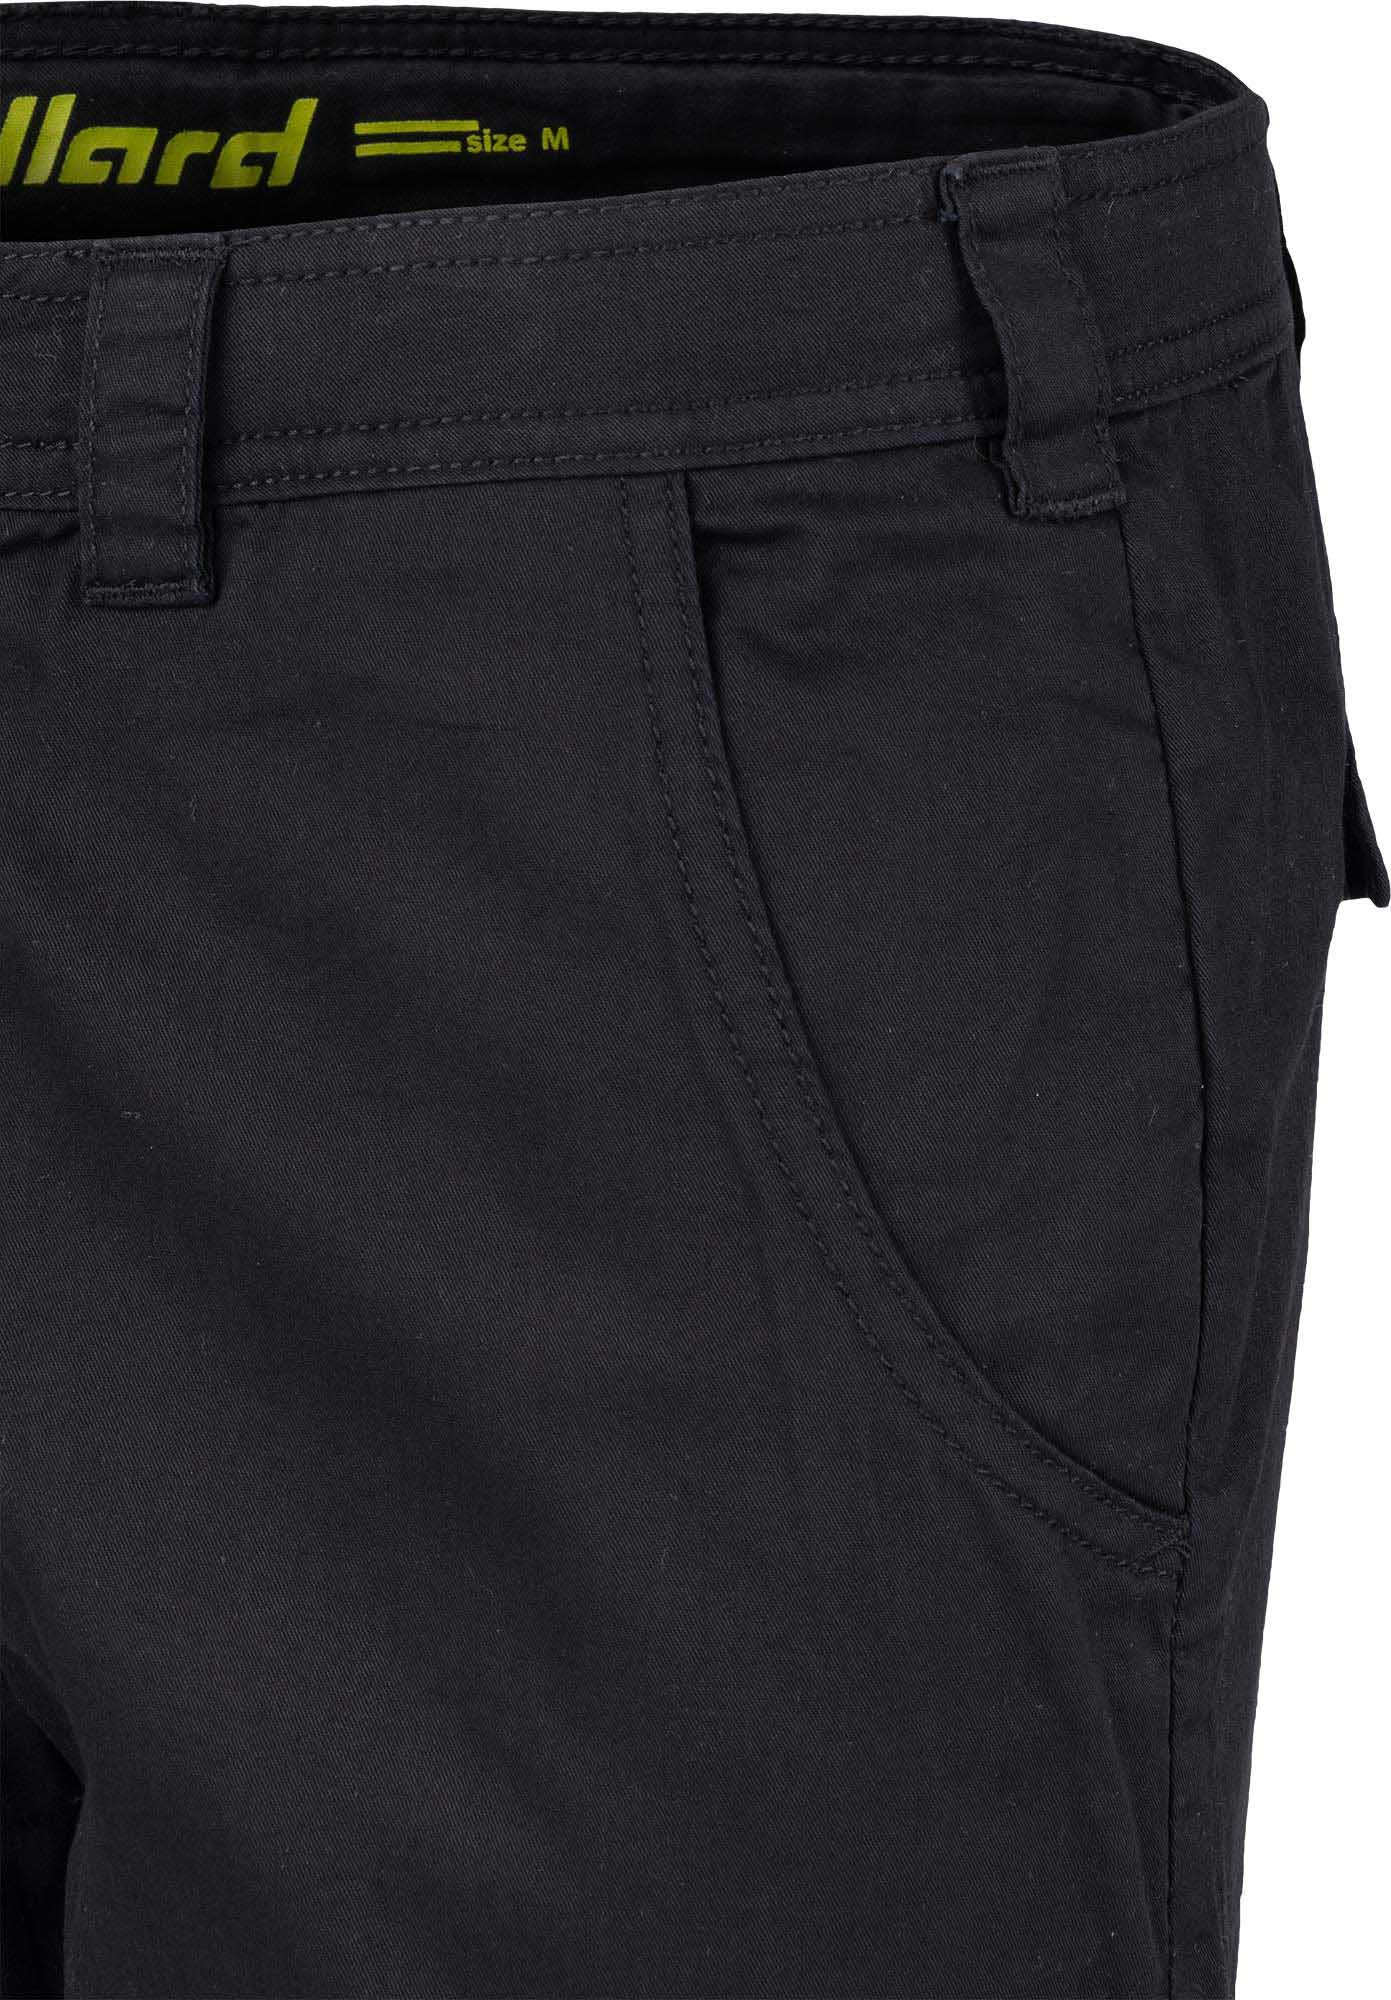 Men's canvas 3/4 length pants